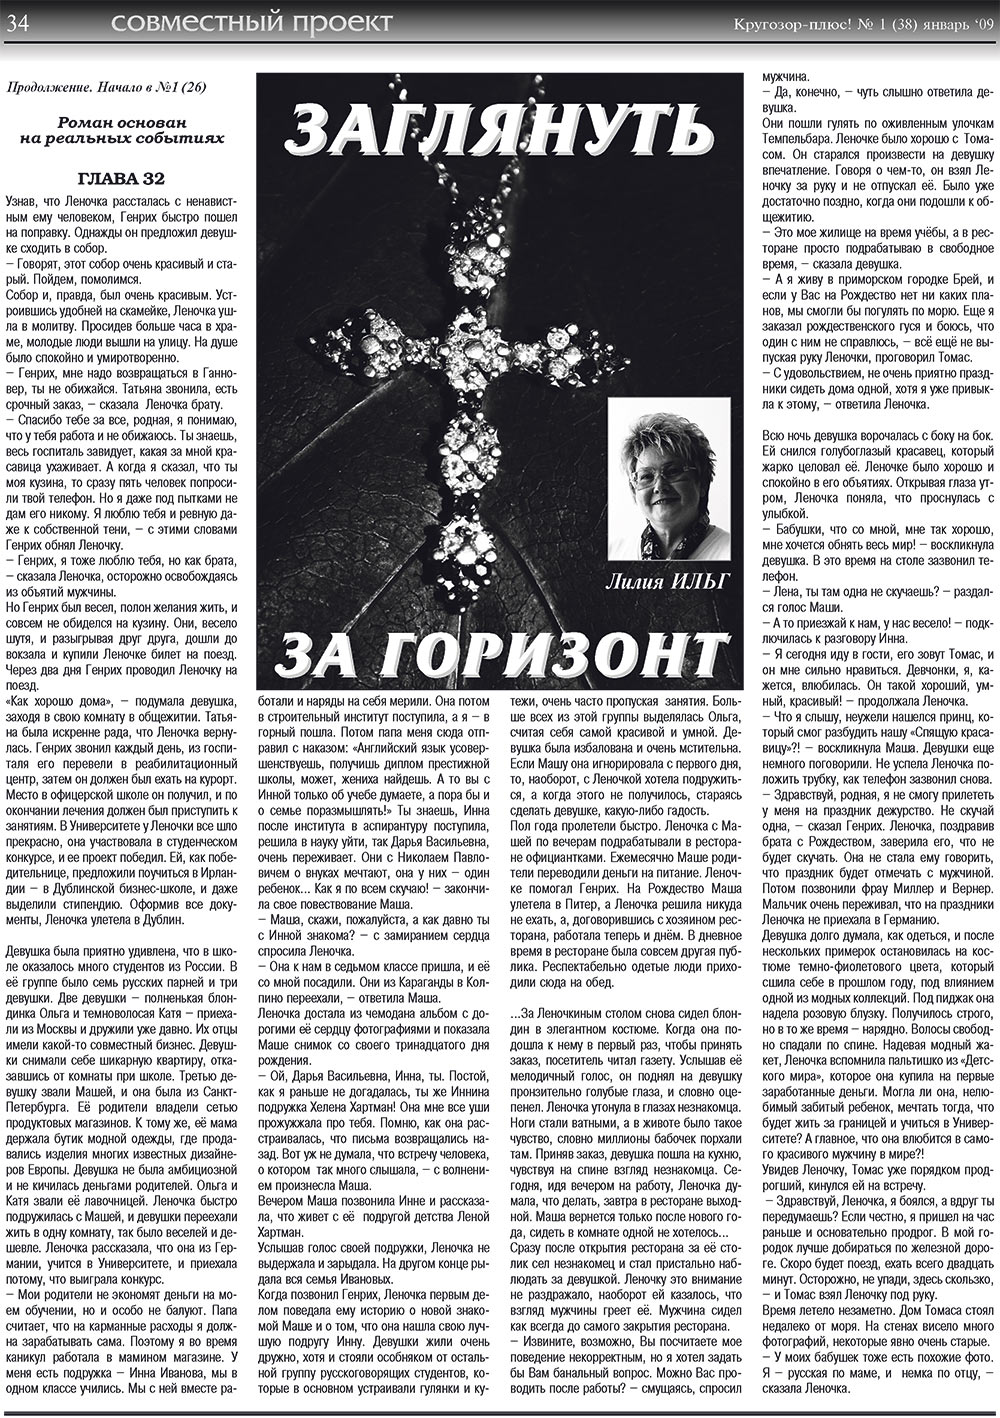 Кругозор плюс!, газета. 2009 №1 стр.34